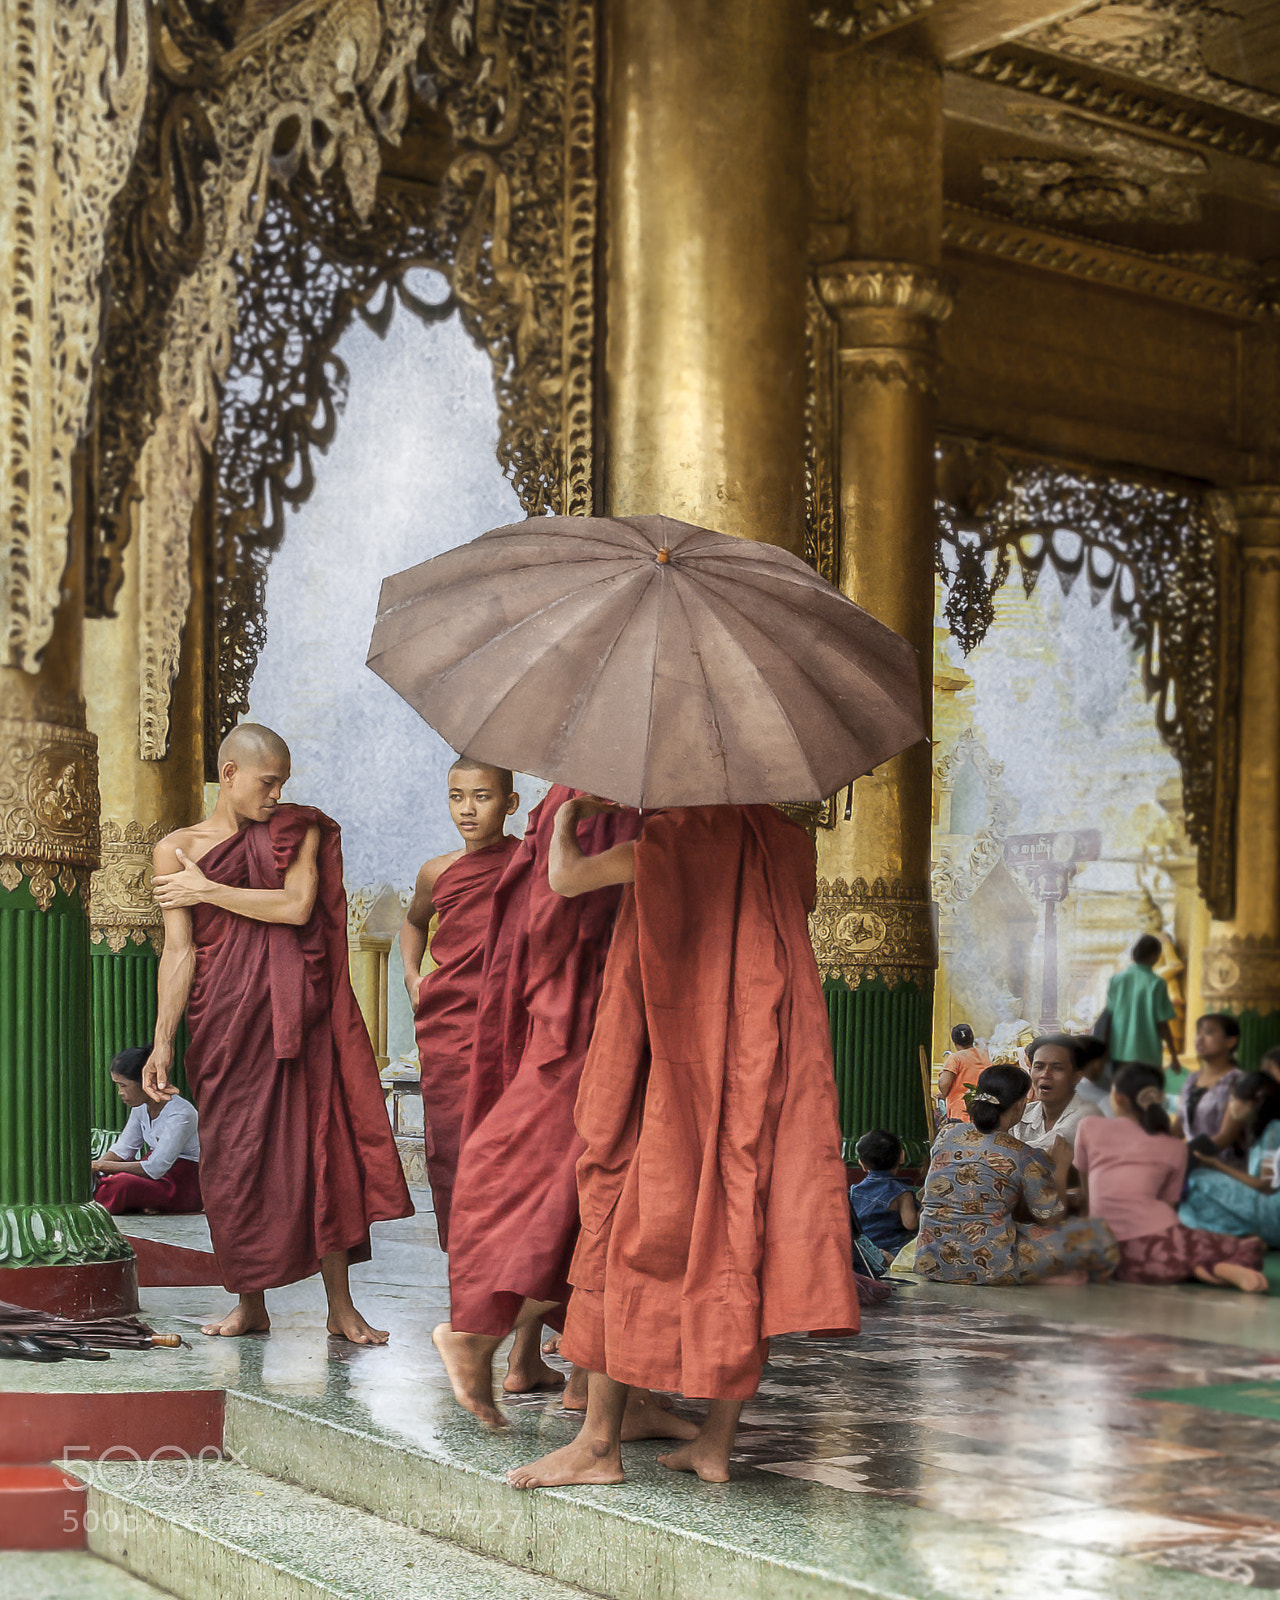 Nikon D70 sample photo. Rain in shwedagon / myanmar photography